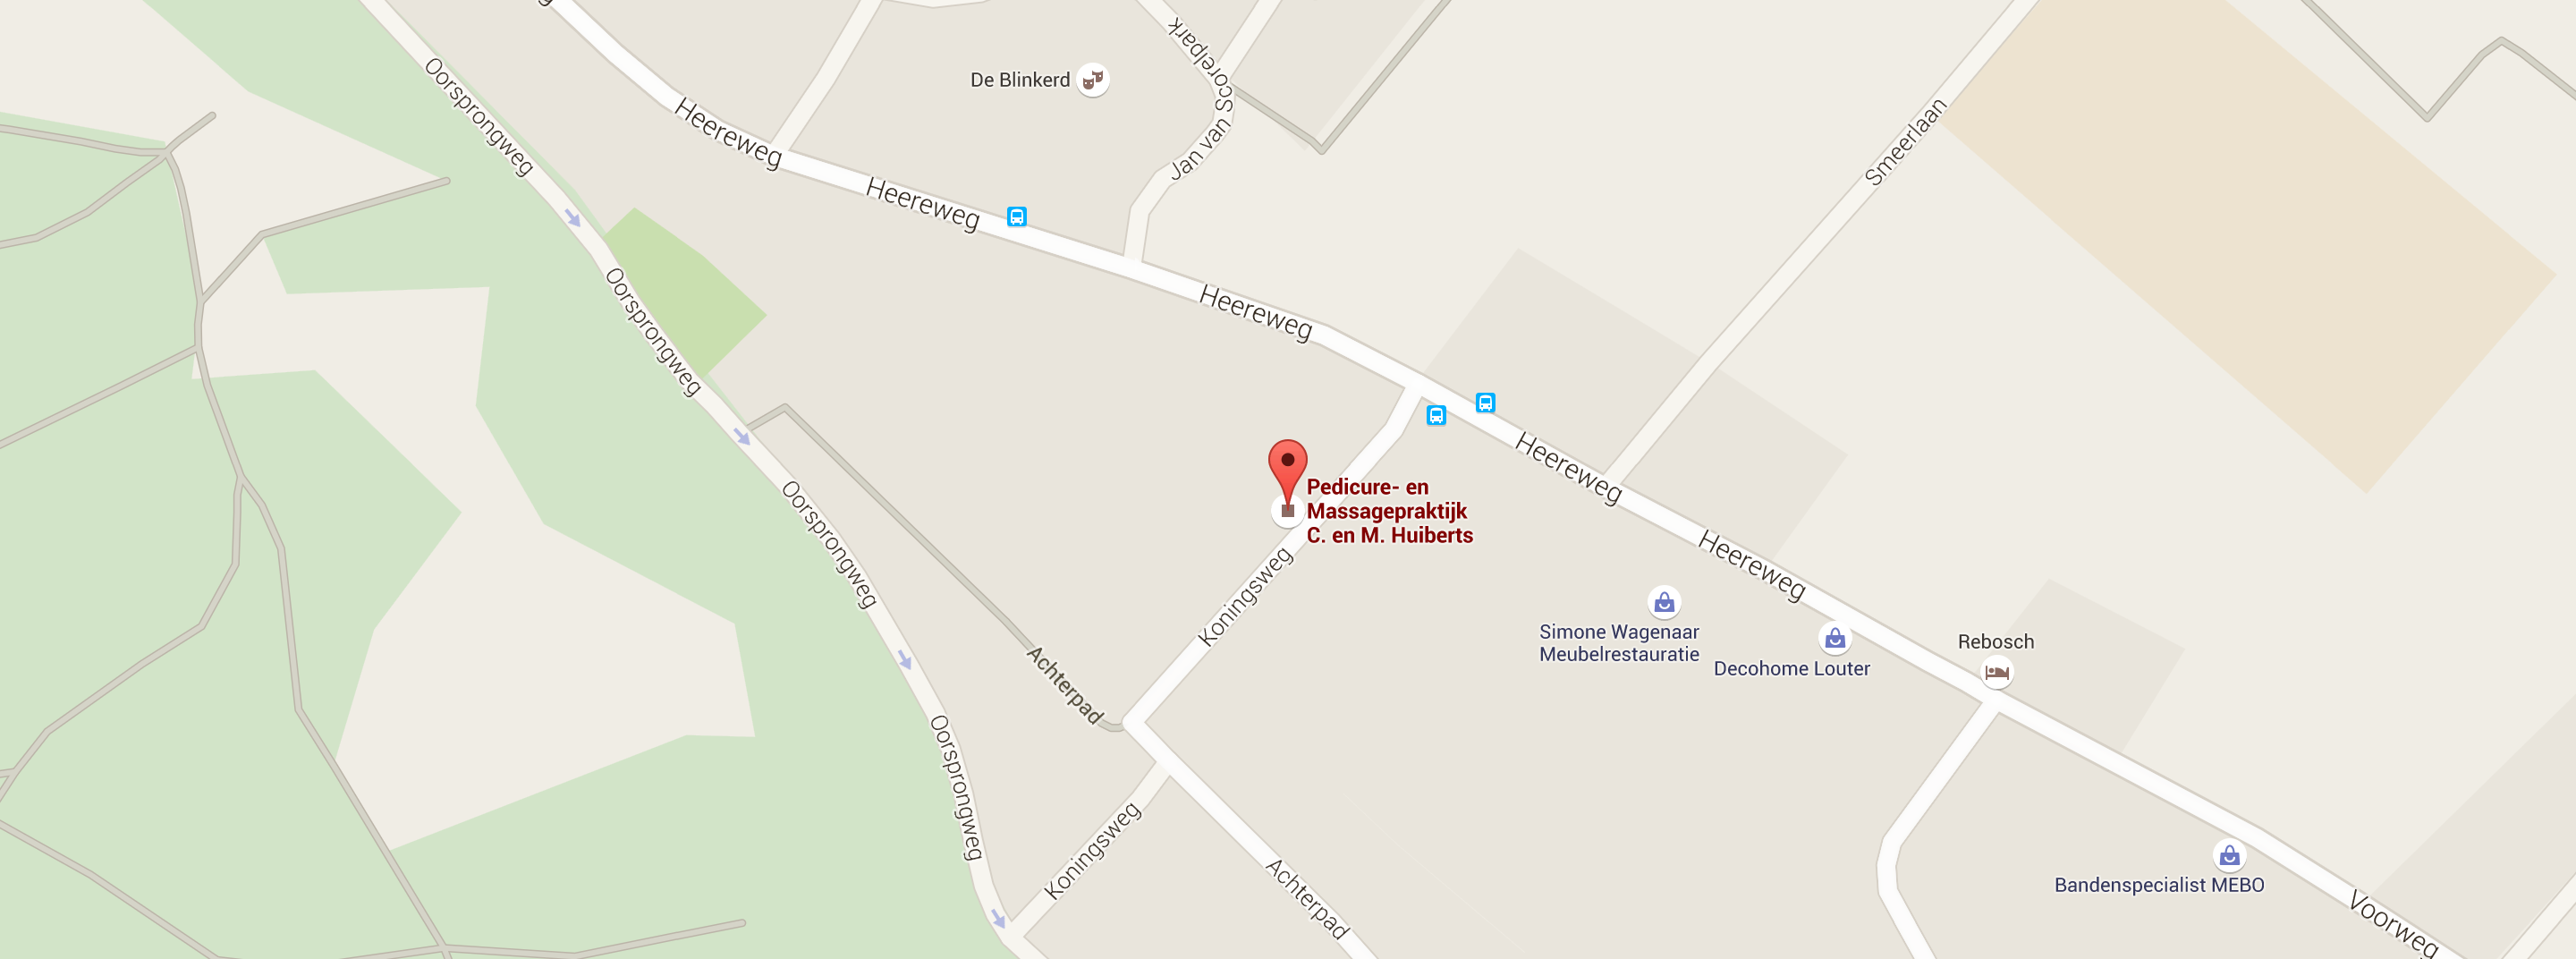 Google Map of Koningsweg 4 schoorl